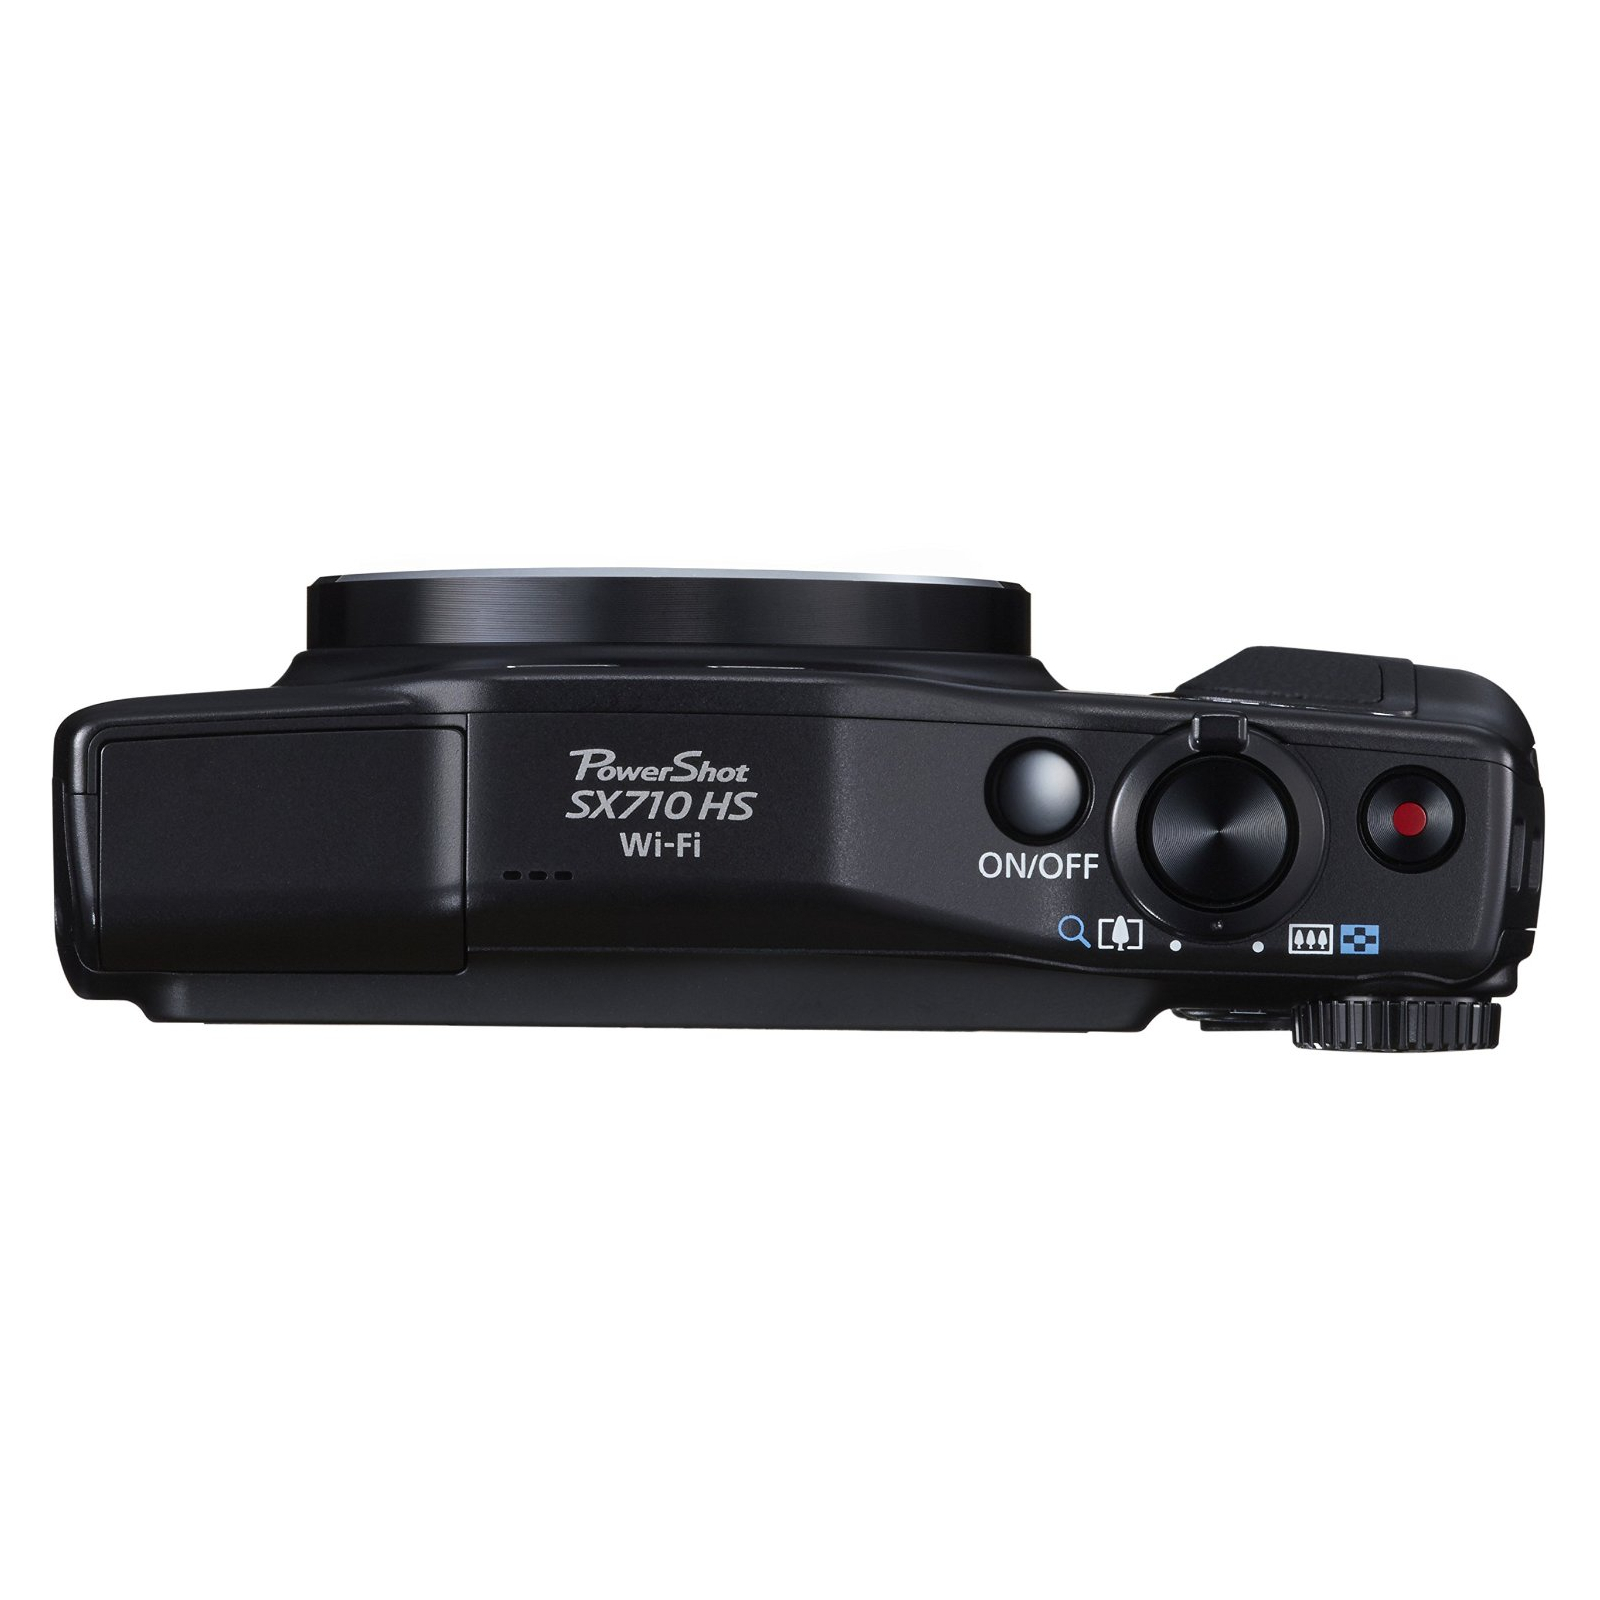 Цифровий фотоапарат Canon PowerShot SX710HS Black (0109C012) зображення 5